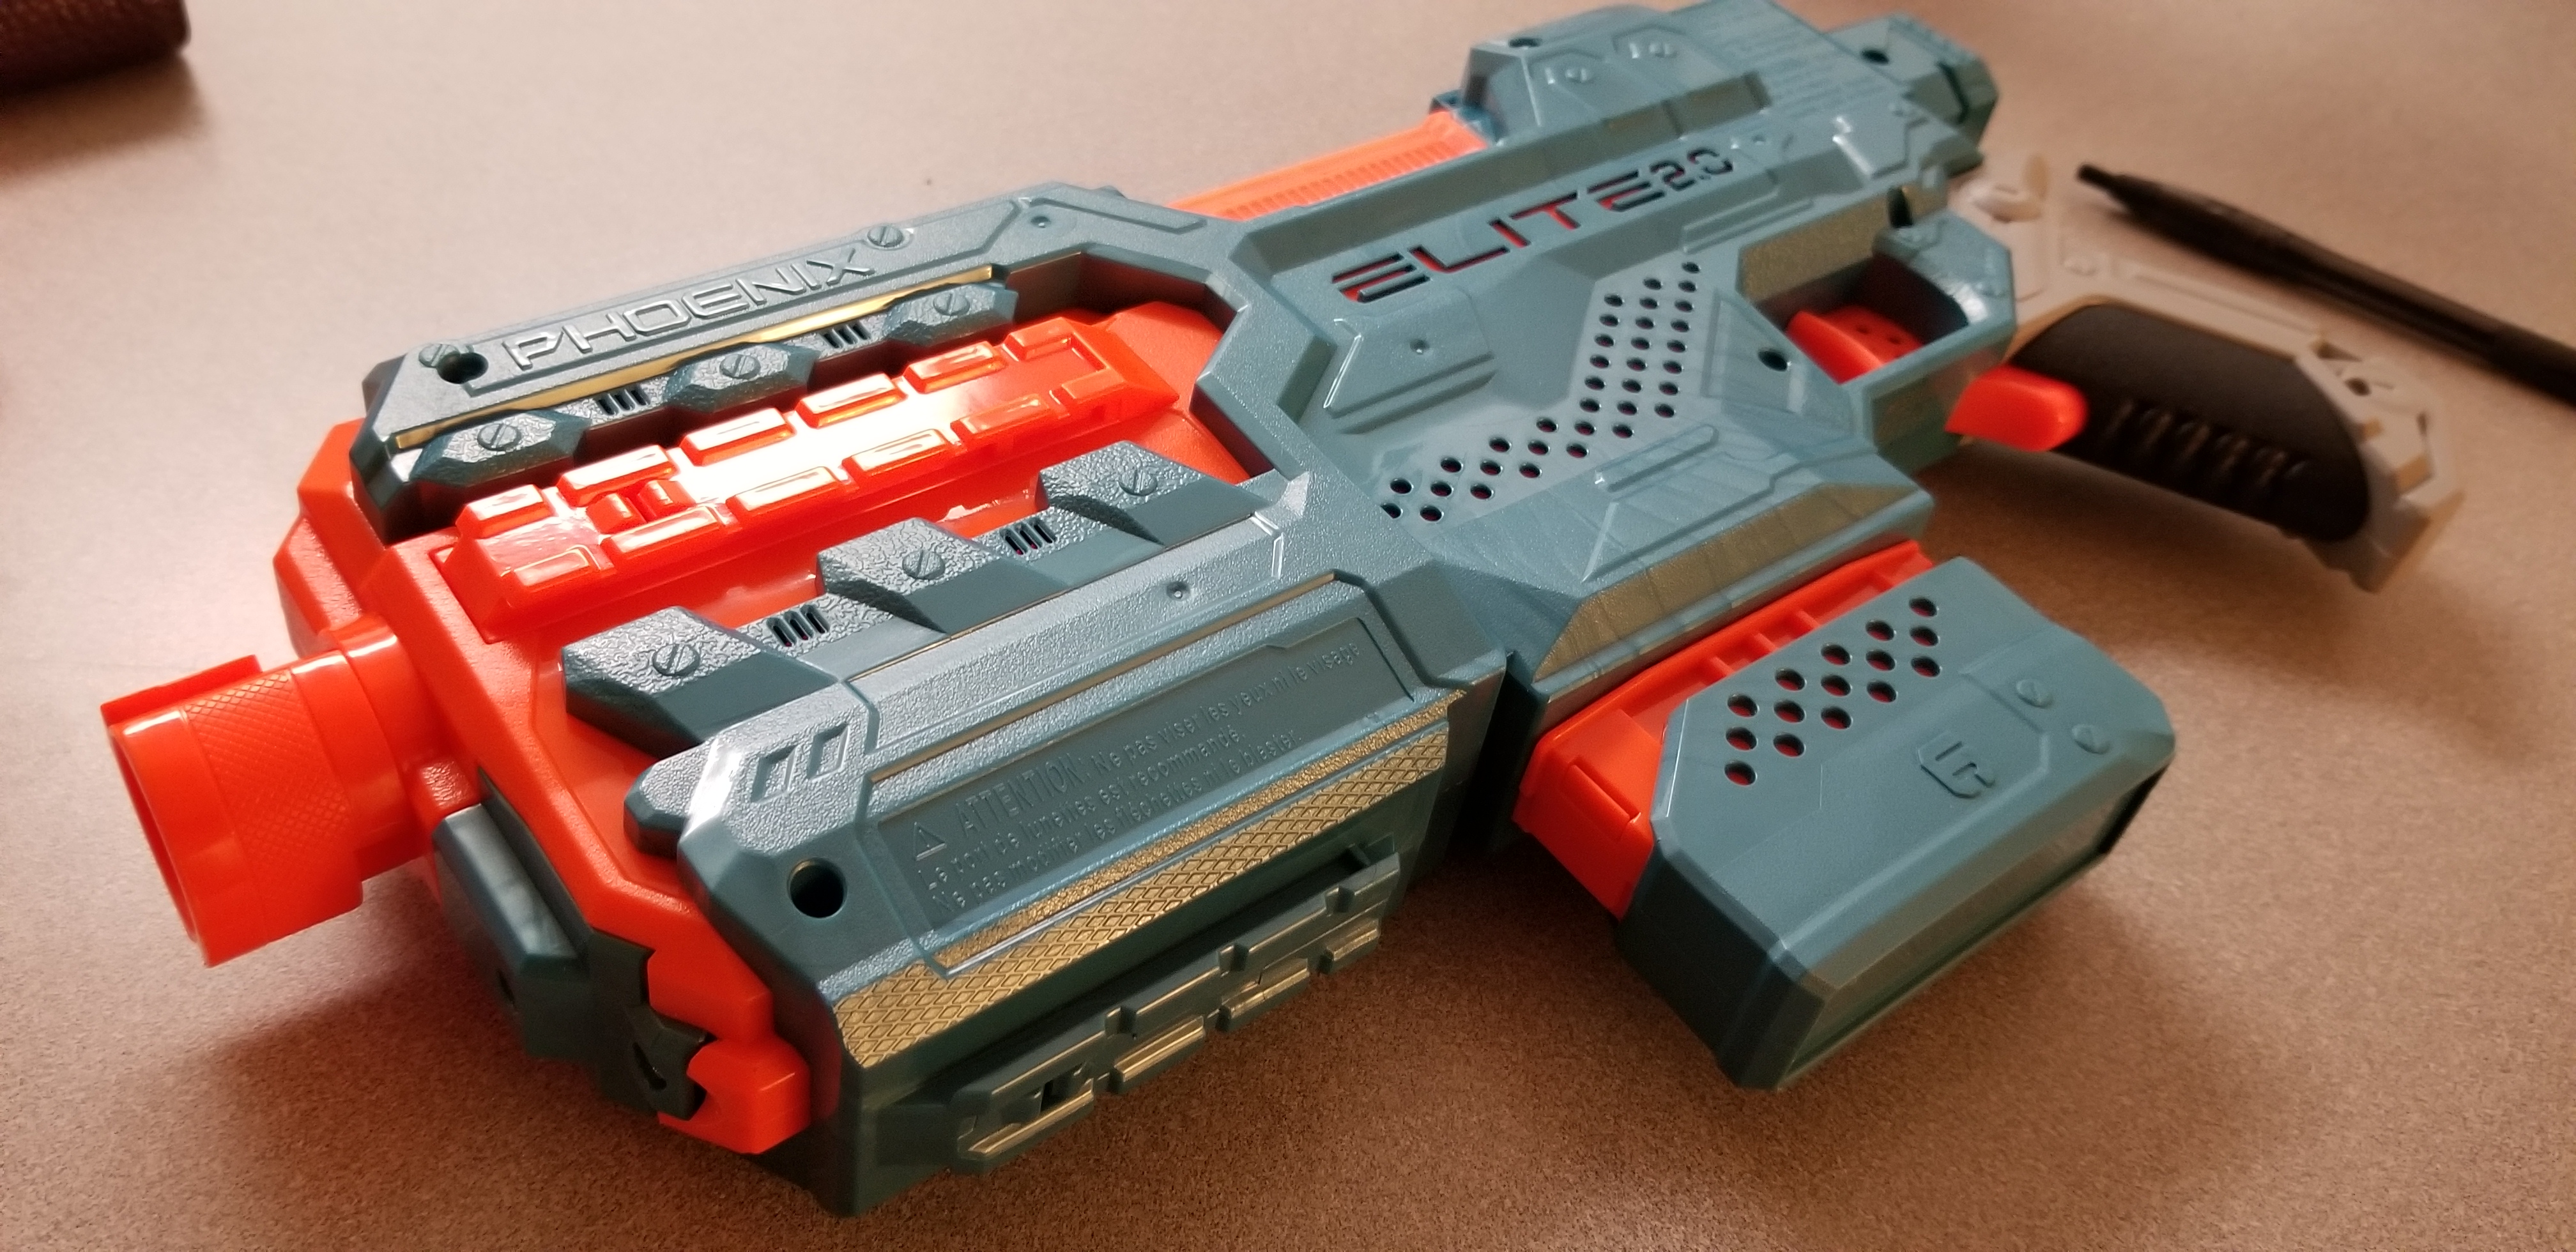 Nerf Gun Elite 2.0 Phoenix CS-6 